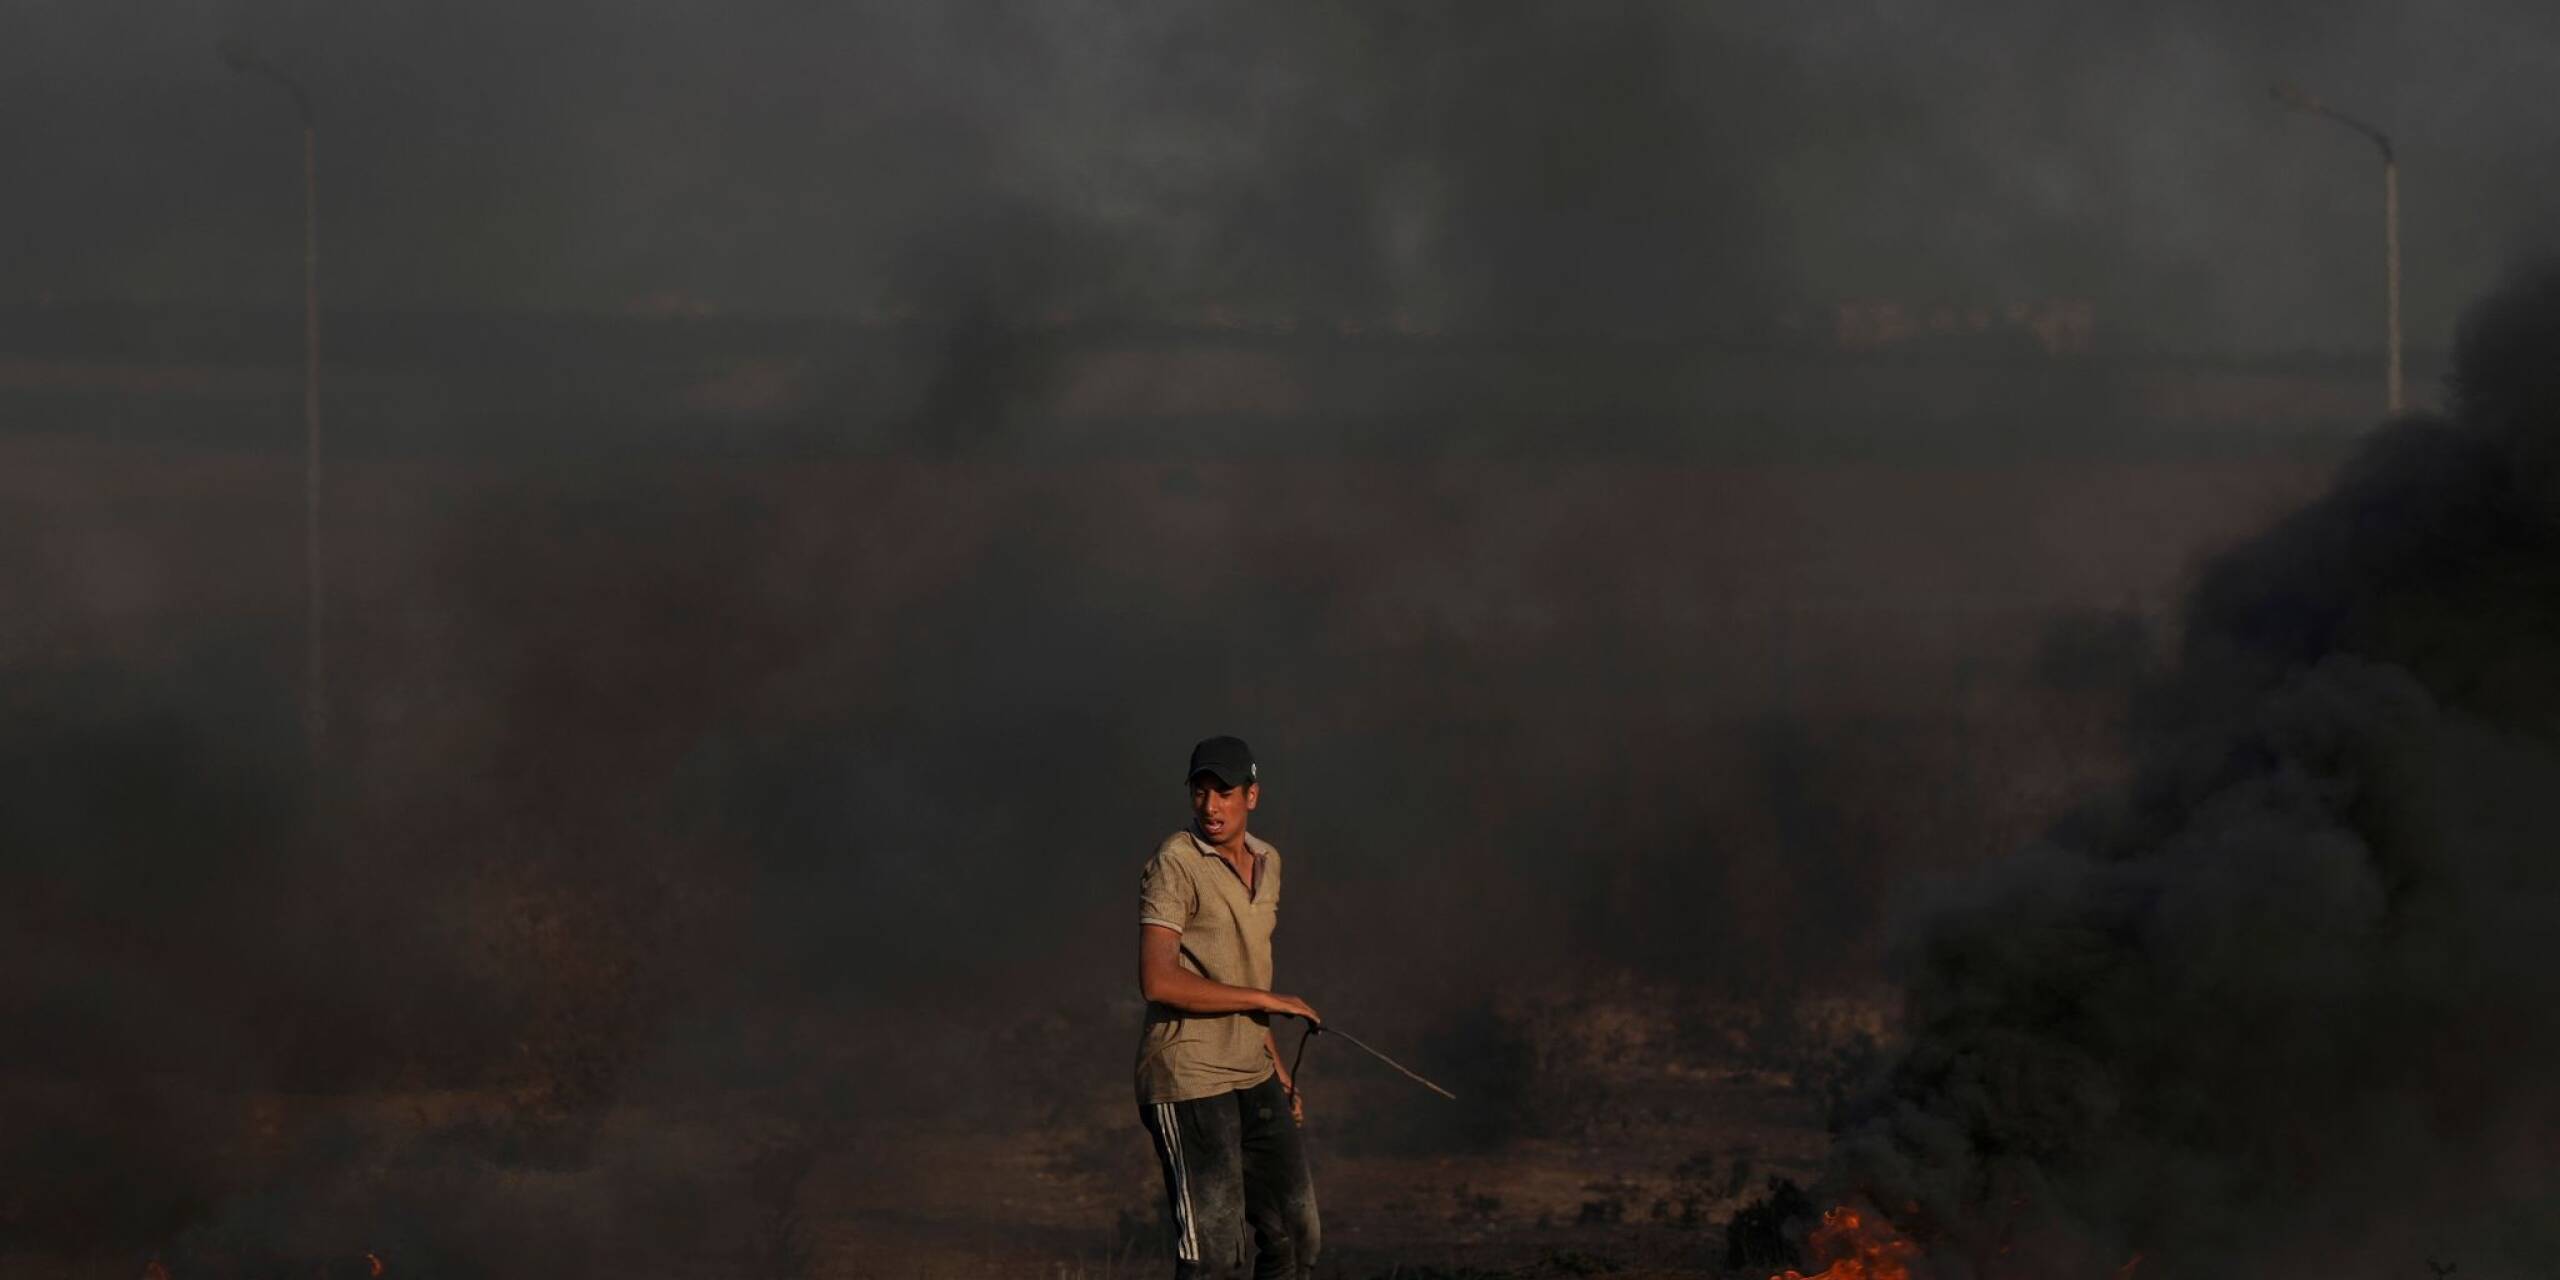 Erneut ist es an der Gaza-Grenze zu Konfrontationen gekommen - mindestens ein Palästinenser kam dabei durch Schüsse ums Leben. Dieser palästinensische Demonstrant verbrennt Reifen als Ausdruck seines Protests.